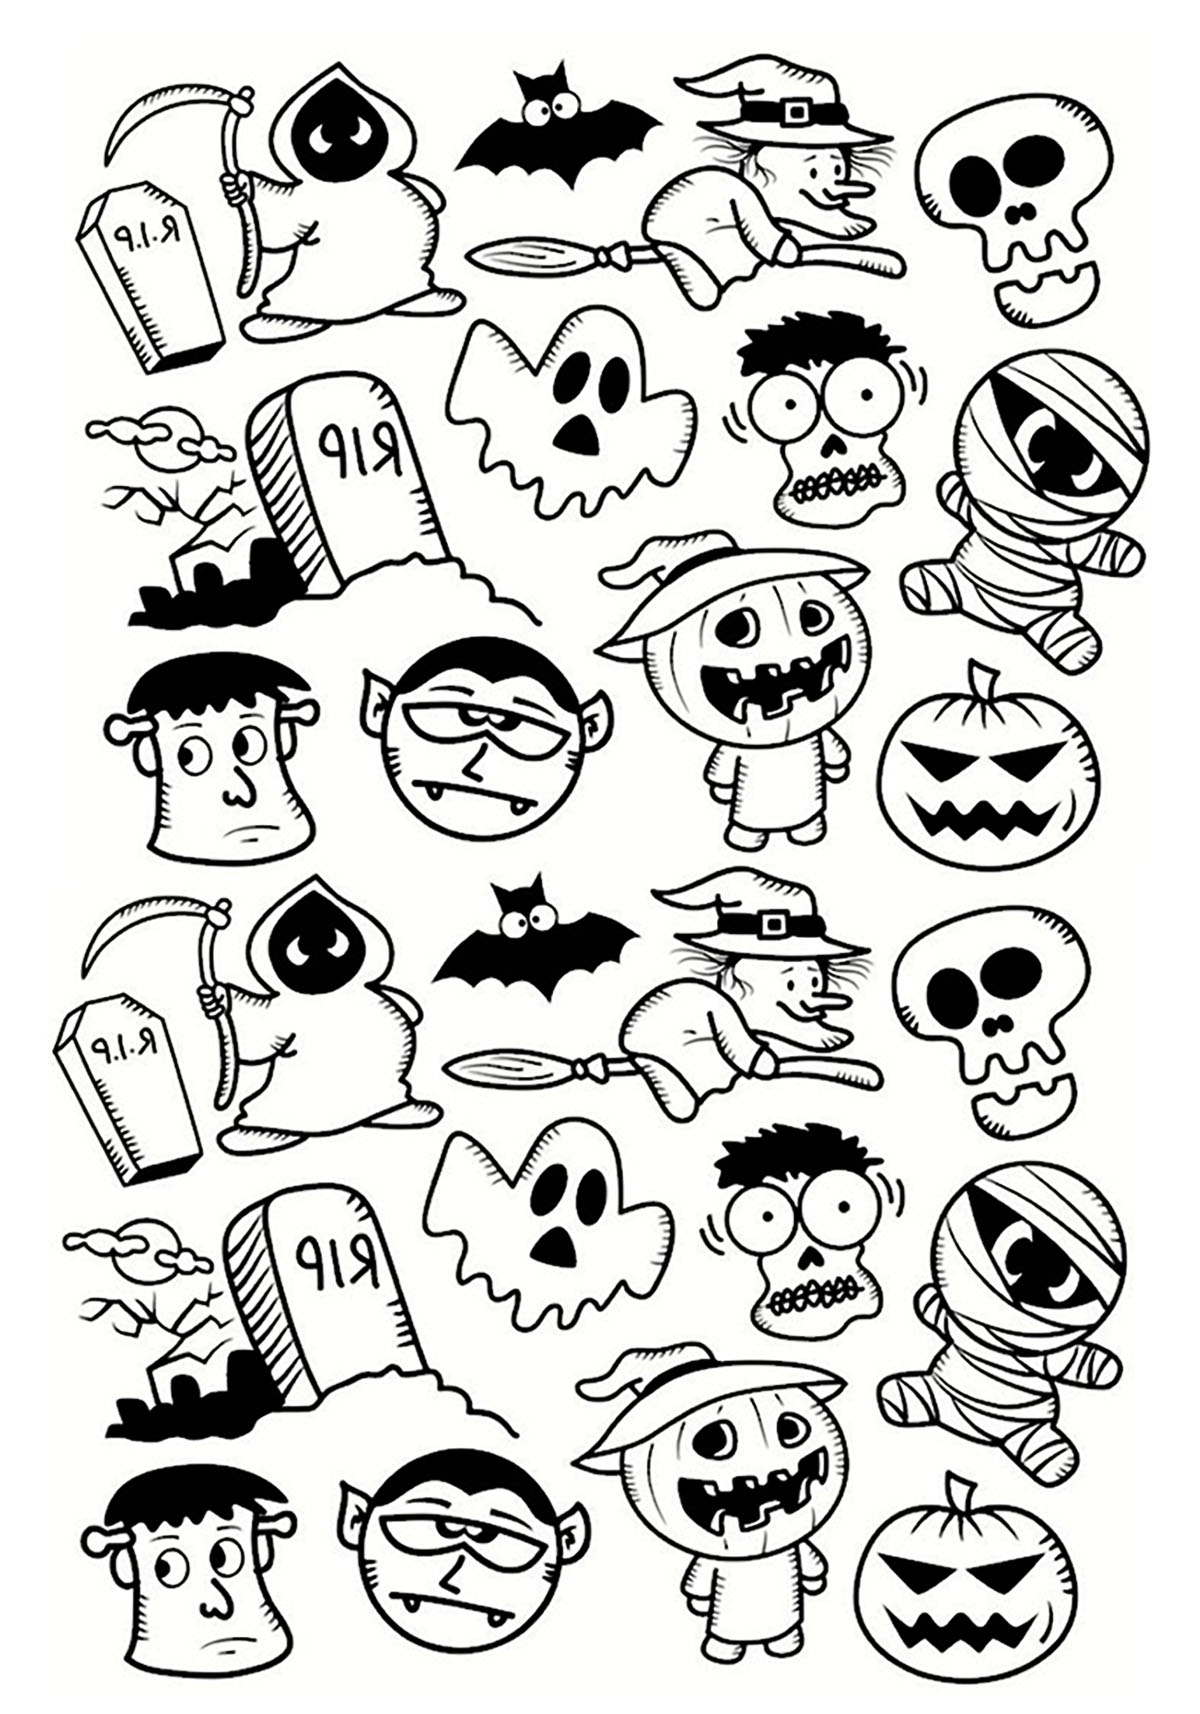 Disegni da colorare per adulti : Halloween - 13